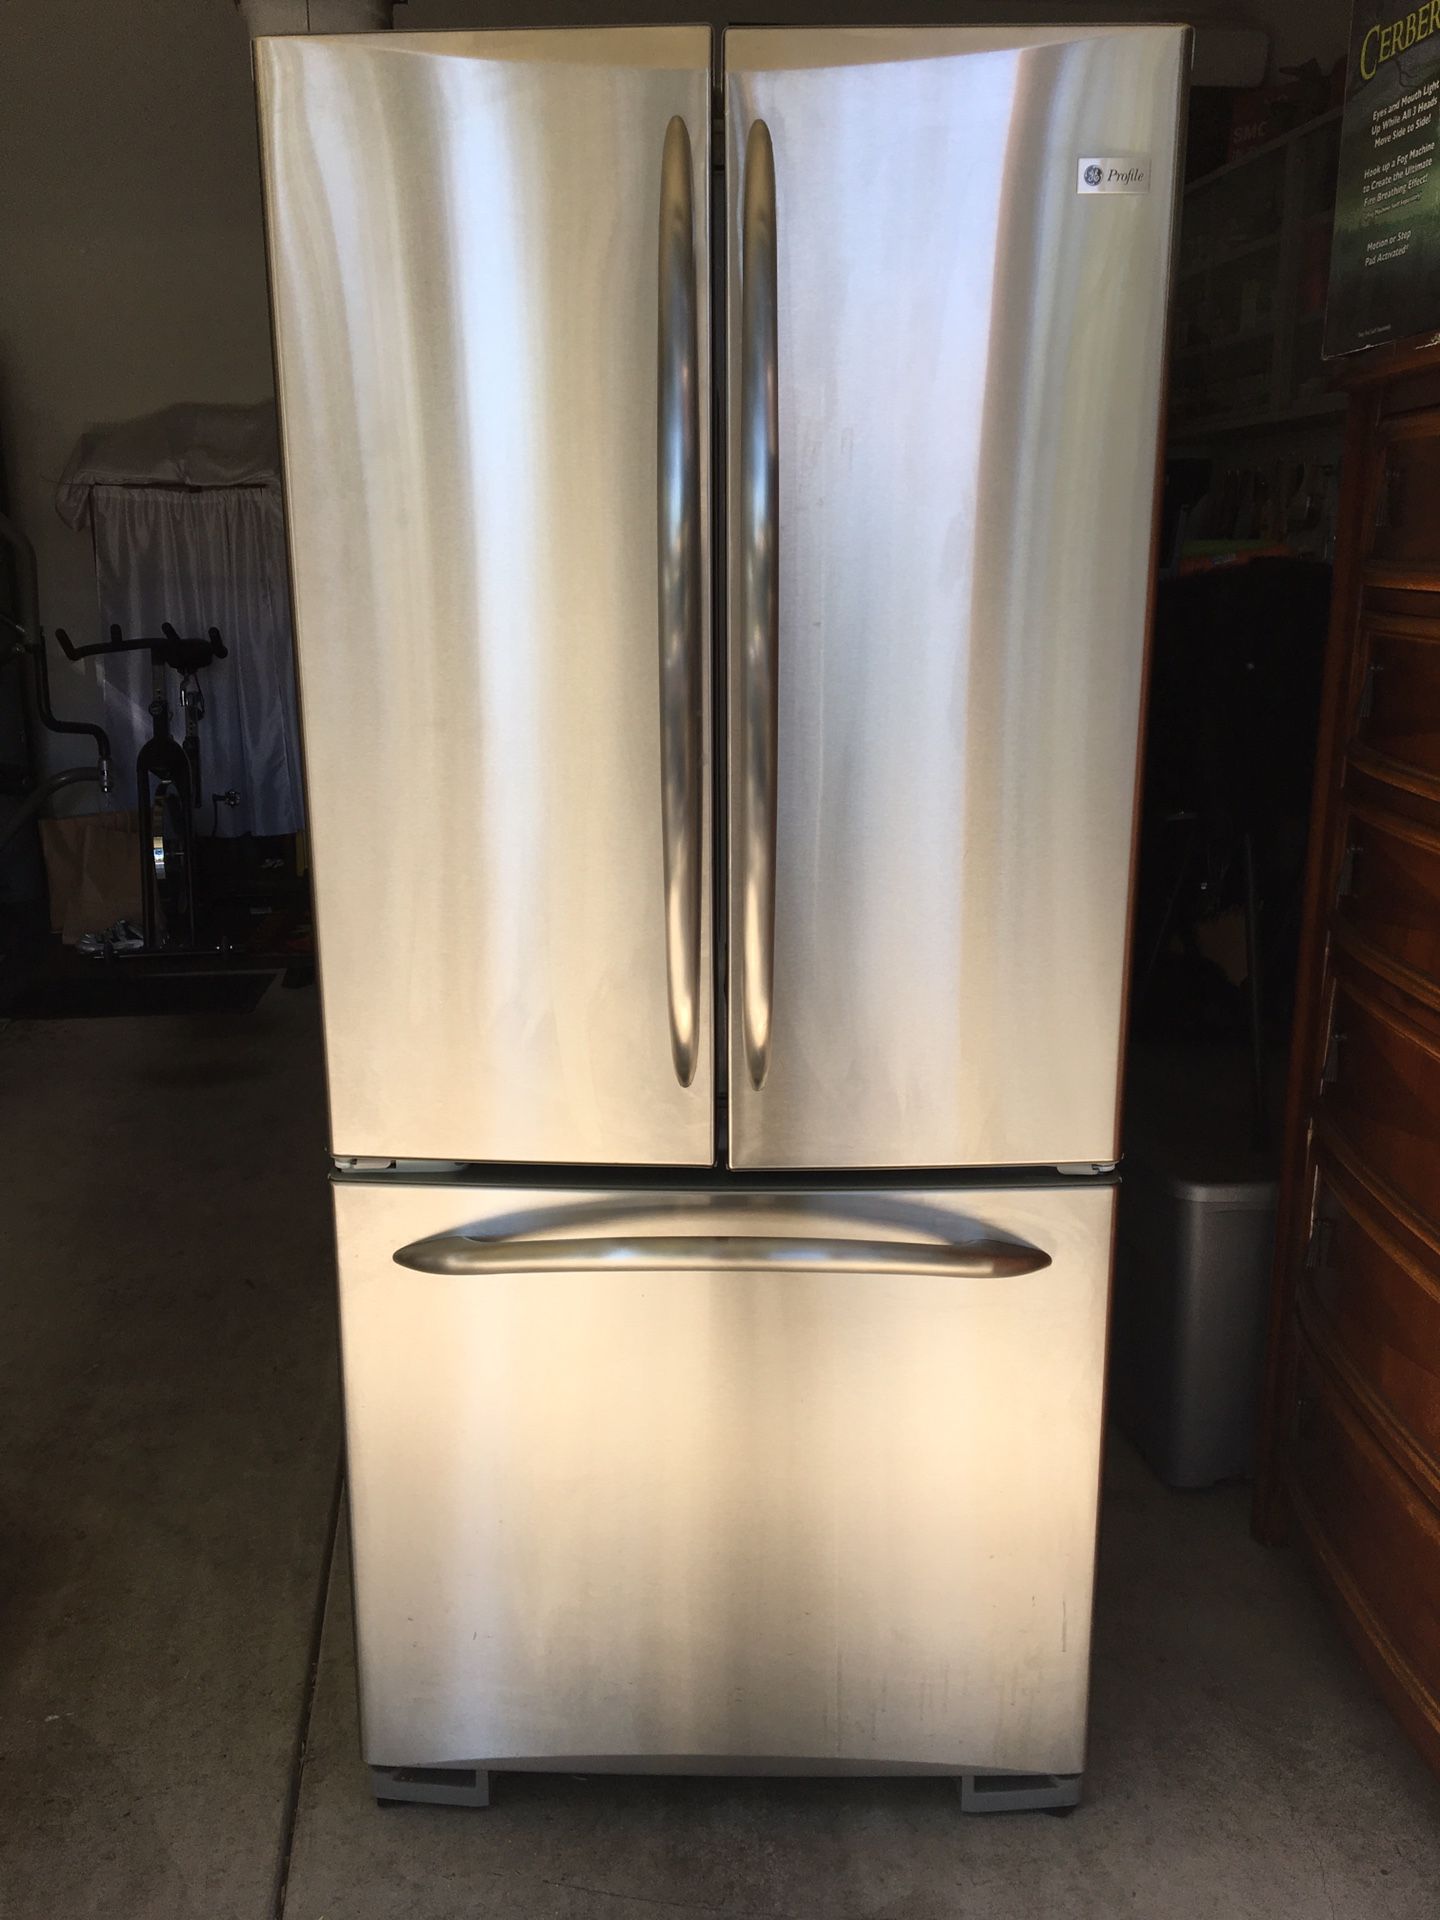 GE Stainless Steel Double Door Refrigerator Bottom Freezer w/ice maker